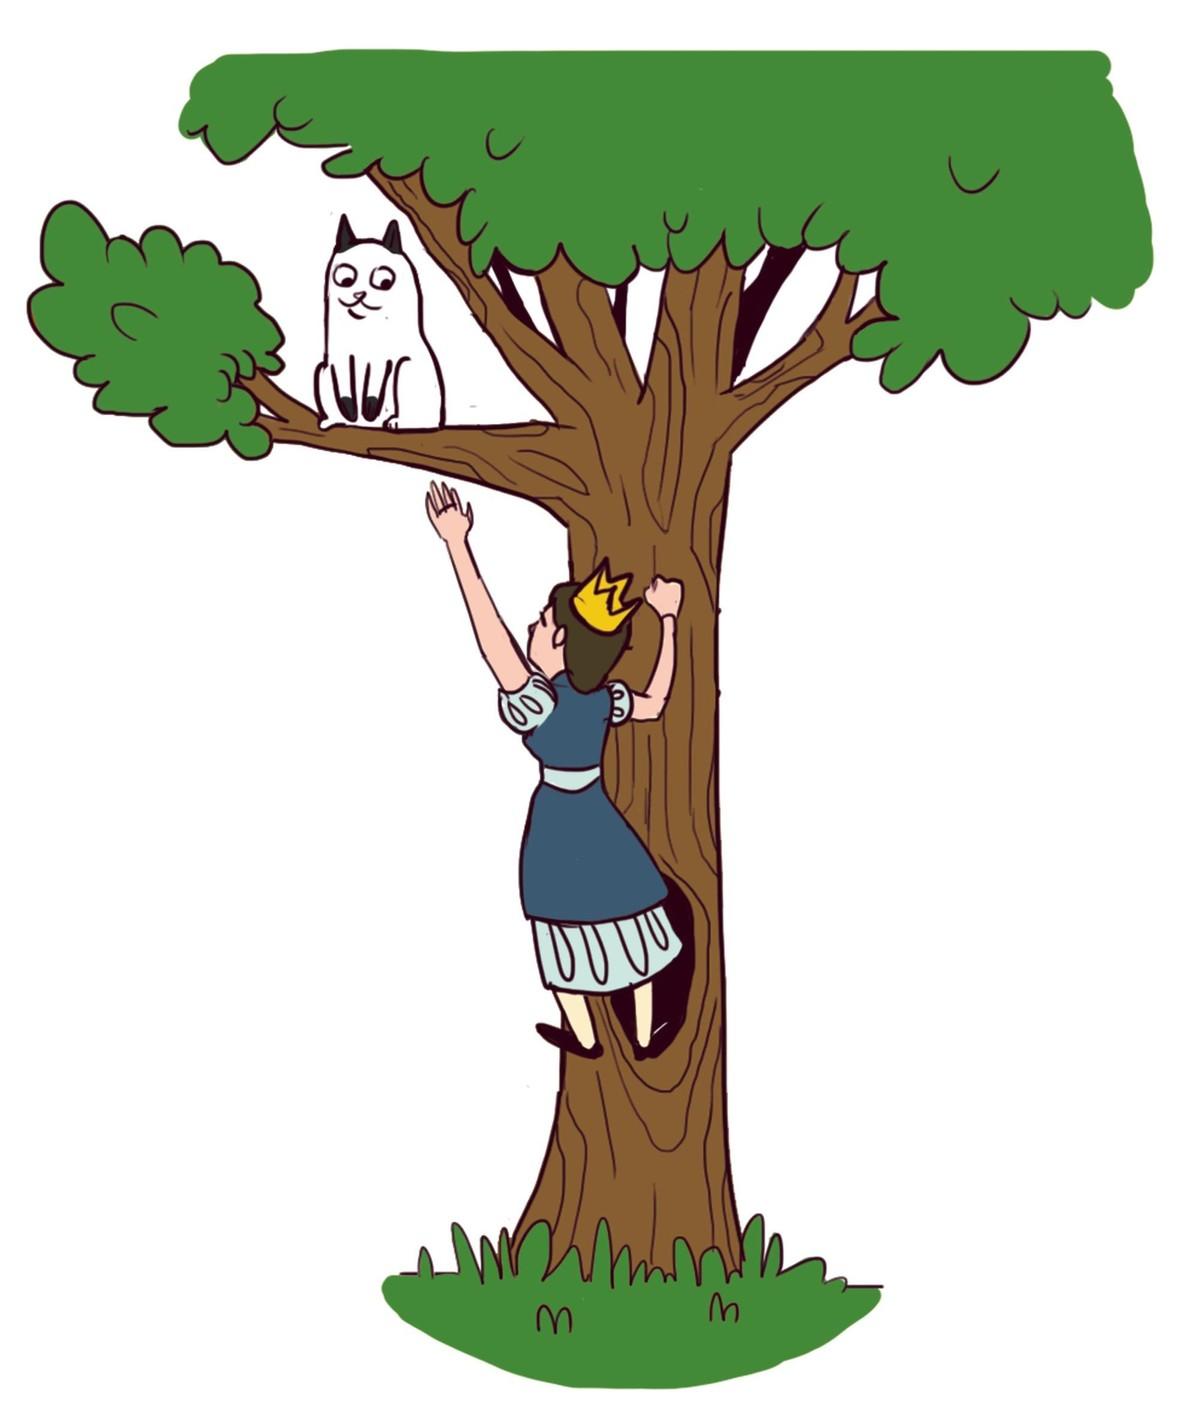 Princesse qui sauve un chat blanc coincé dans un arbre